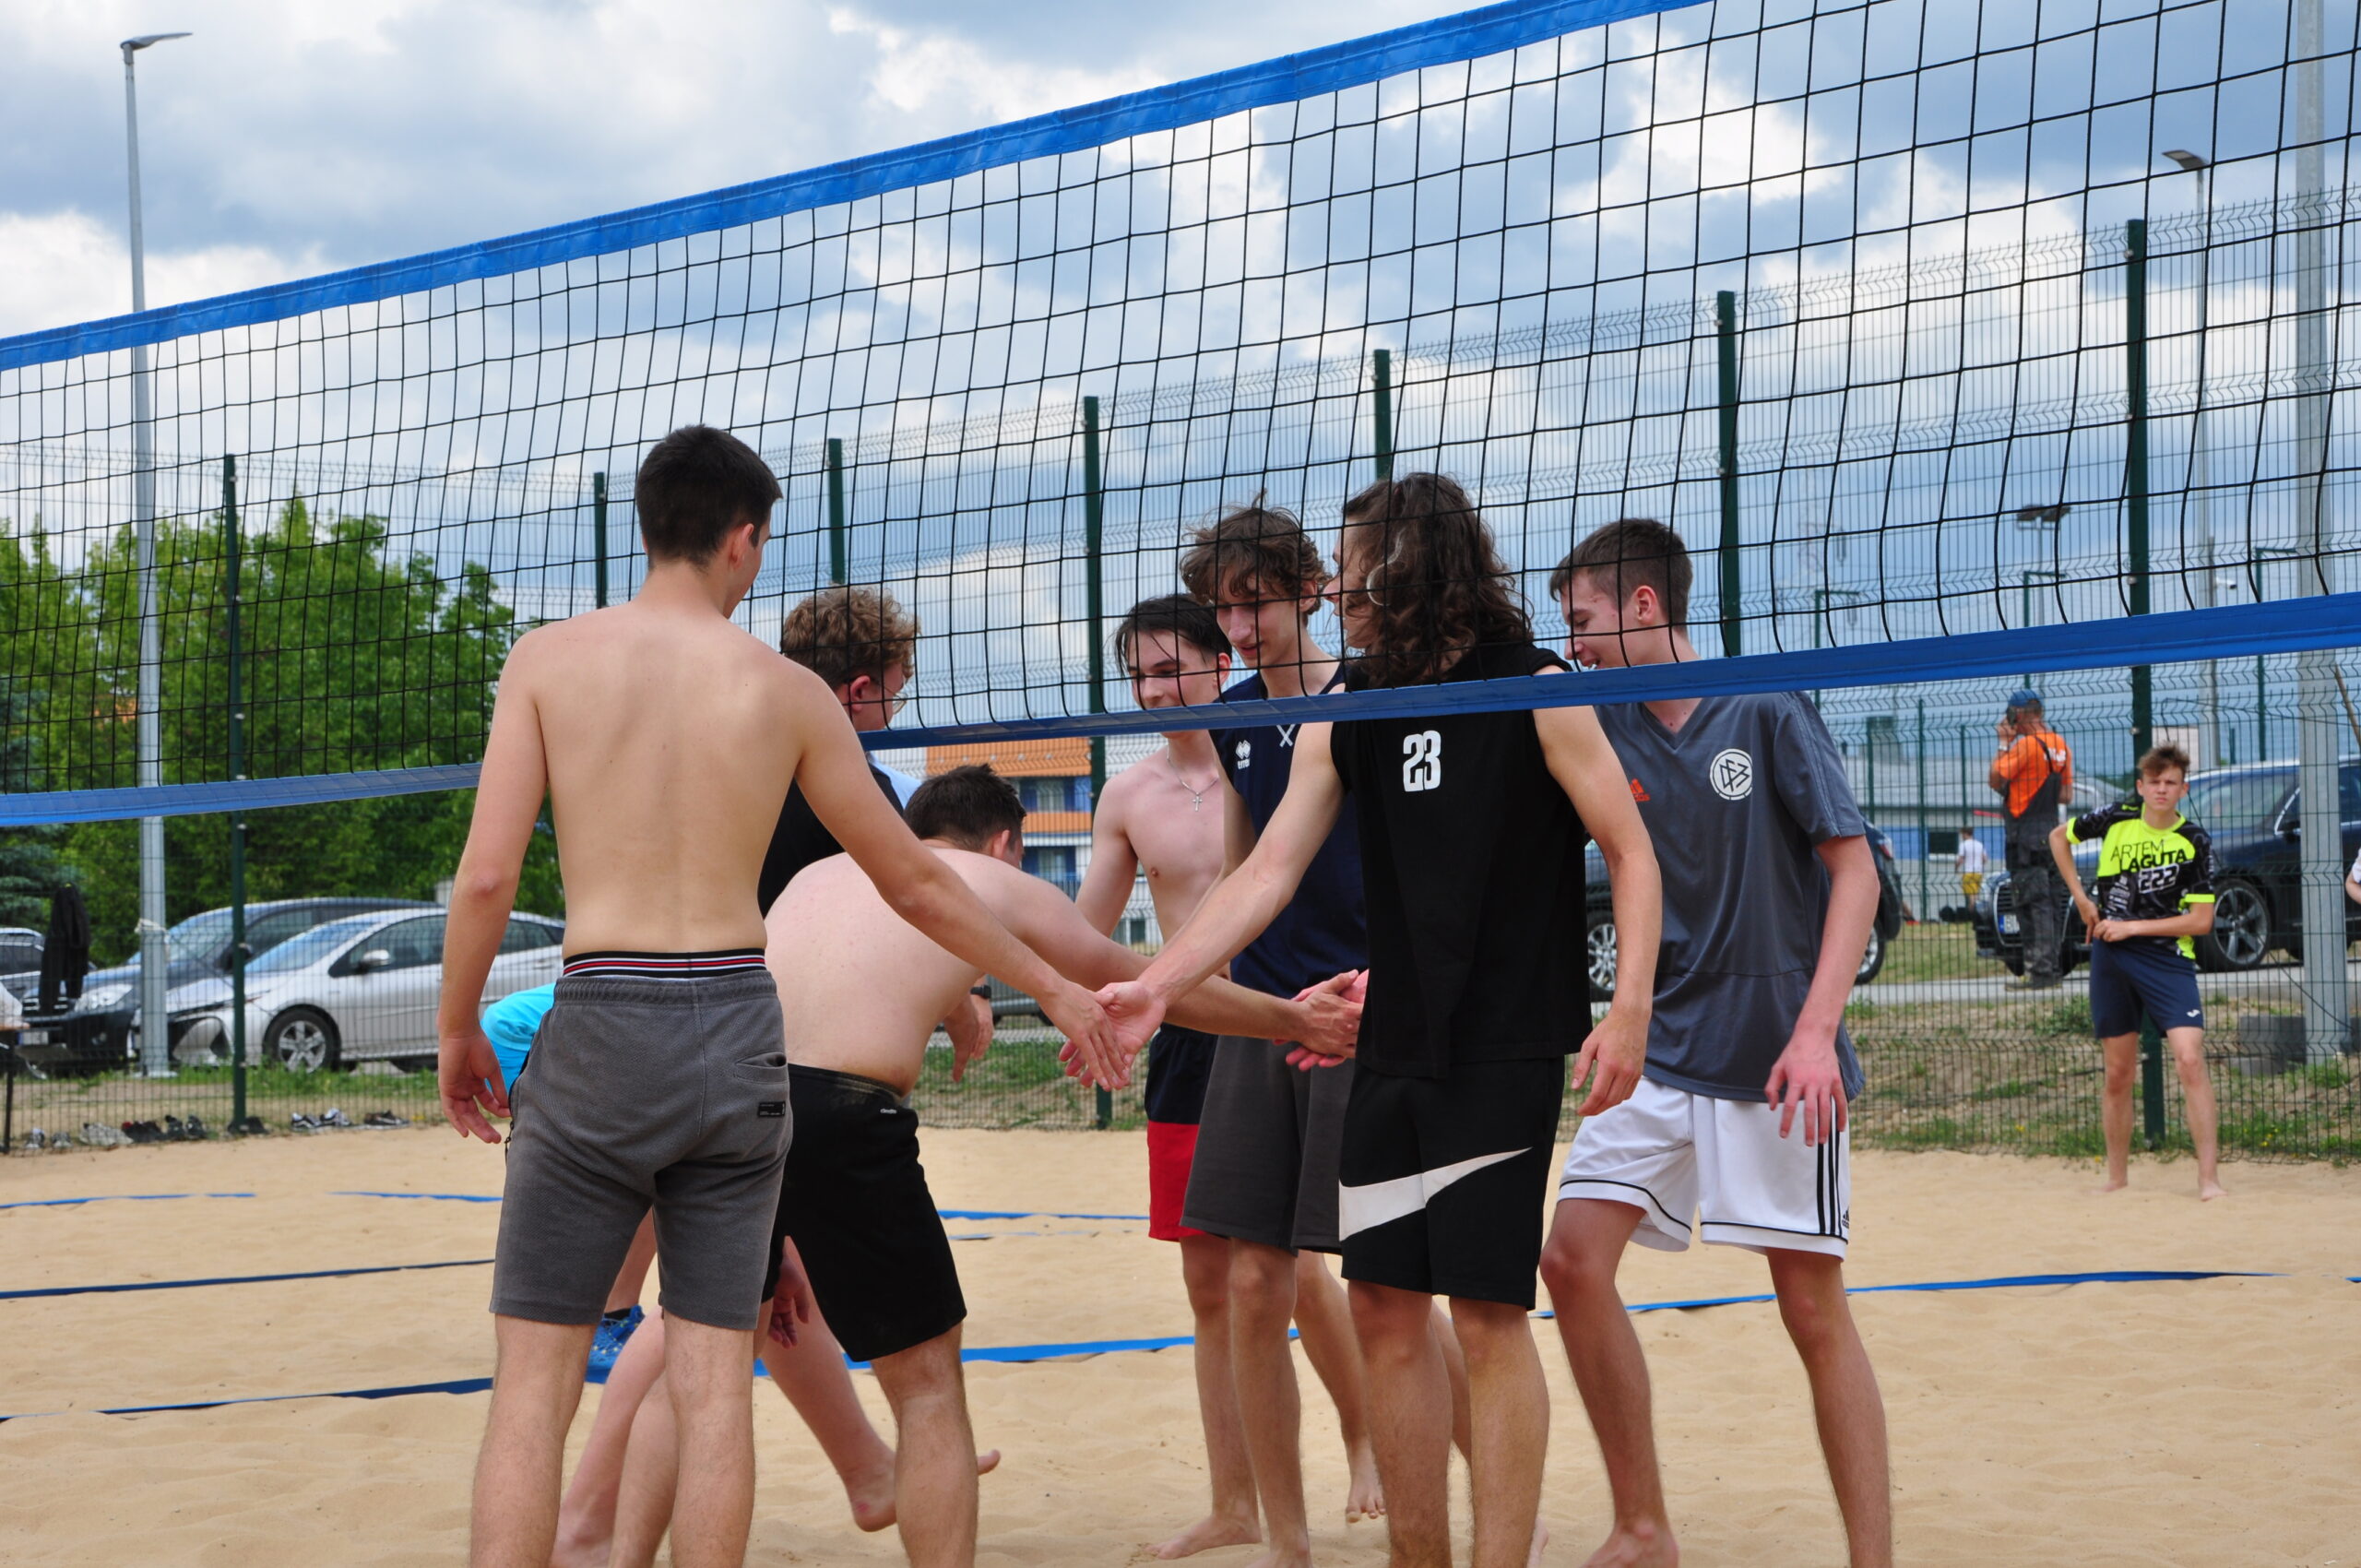 Siatkówka plażowa - uczniowie dziękują sobie za mecz